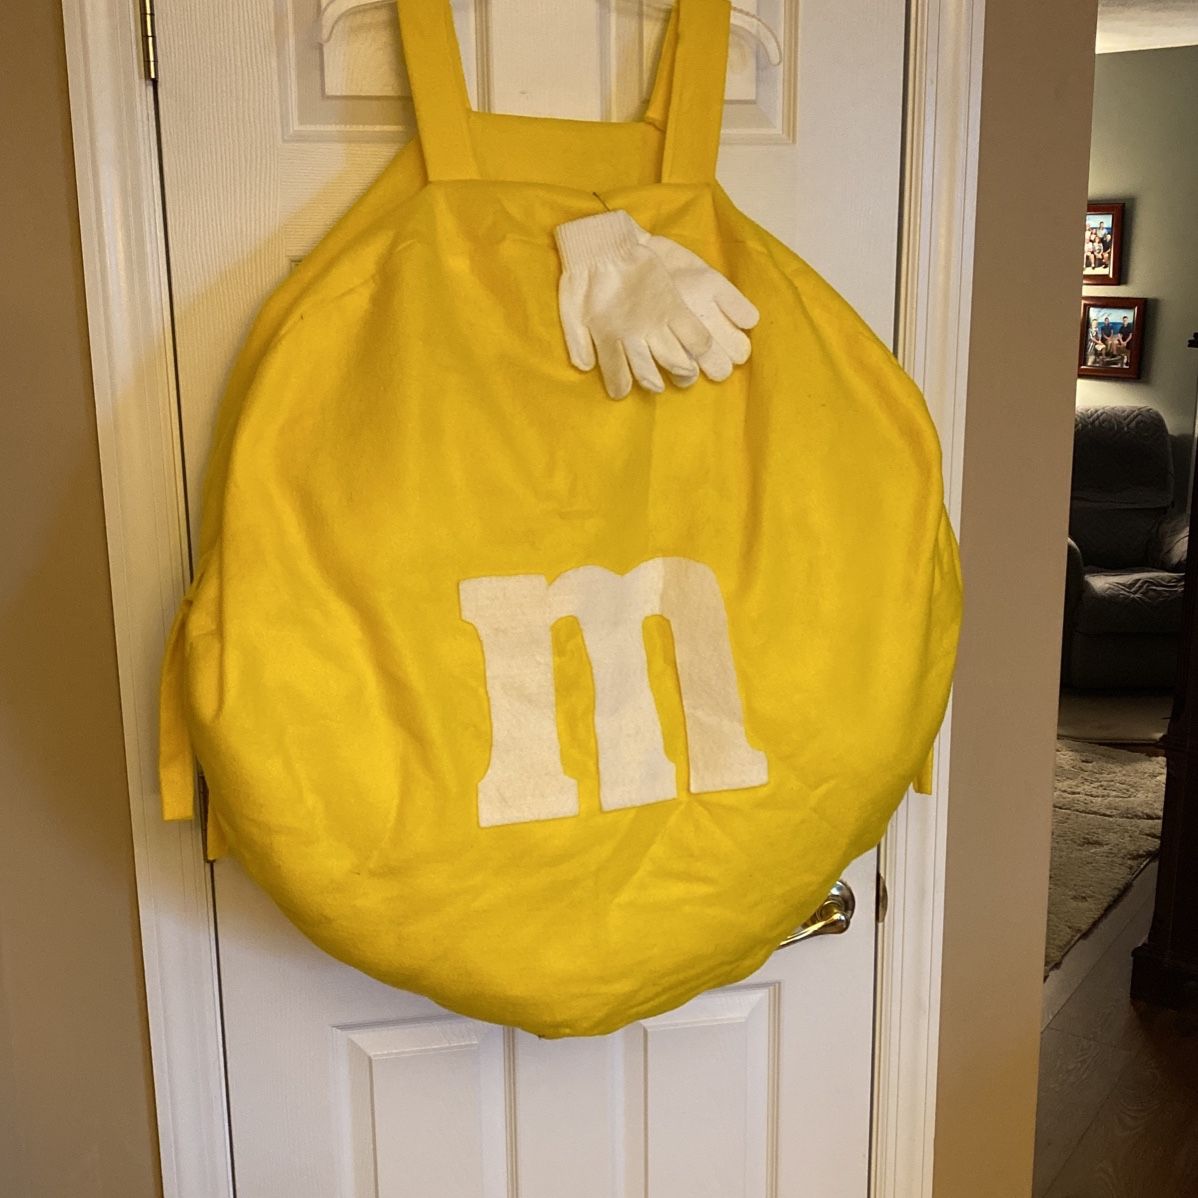 M&m Bag Costume